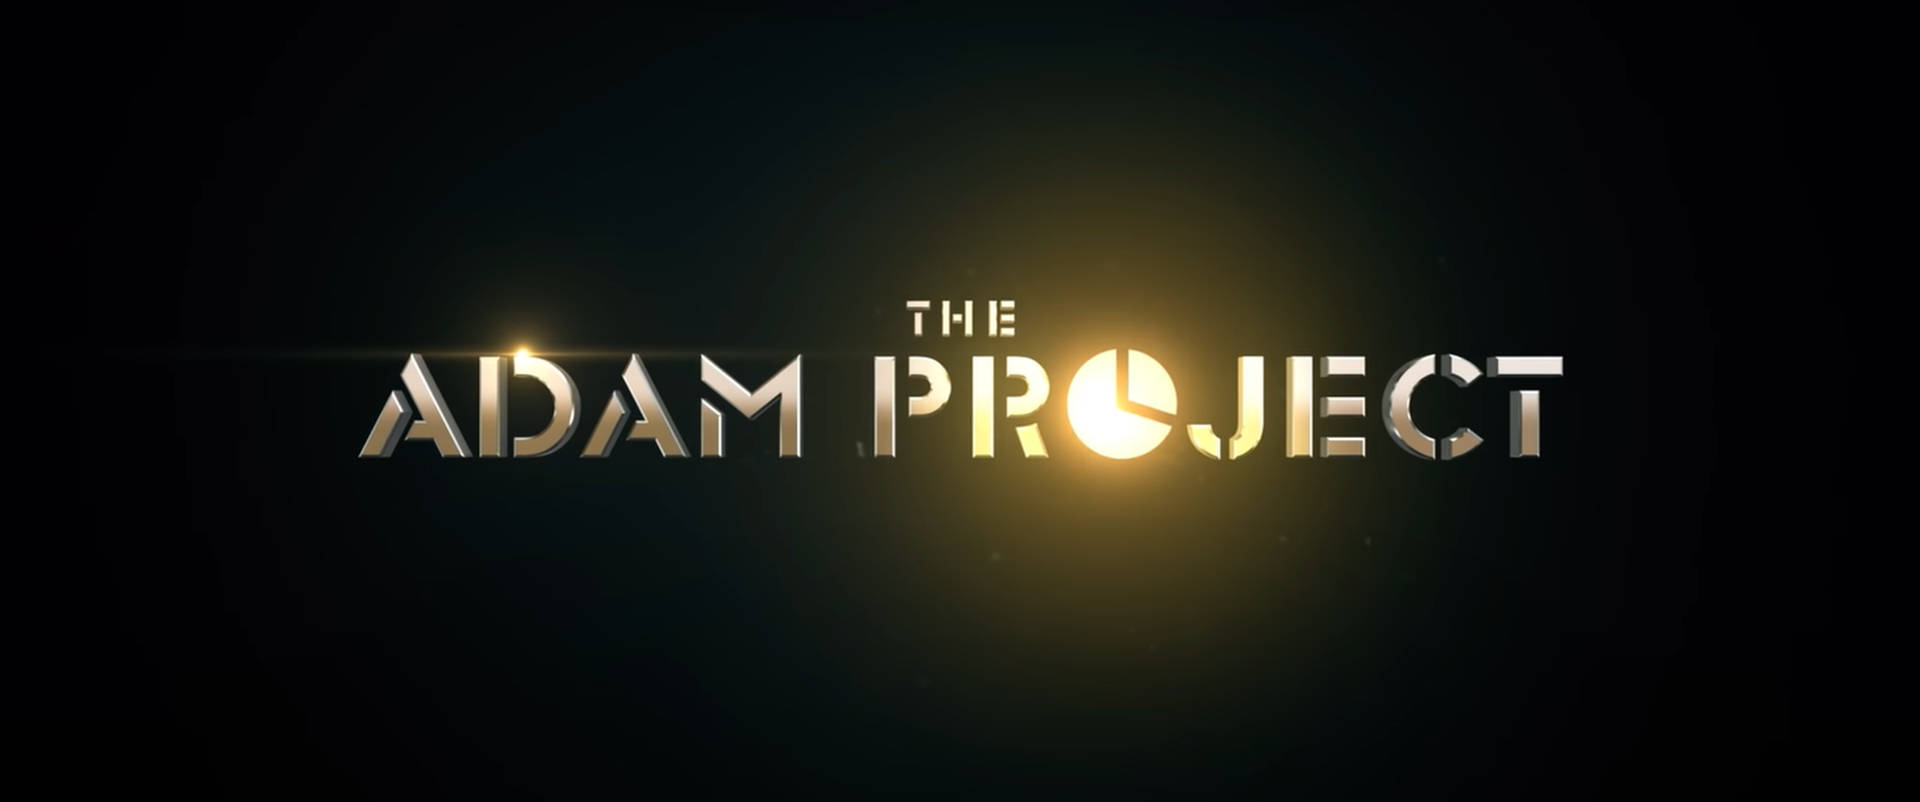 Plano De Fundo Do The Adam Project